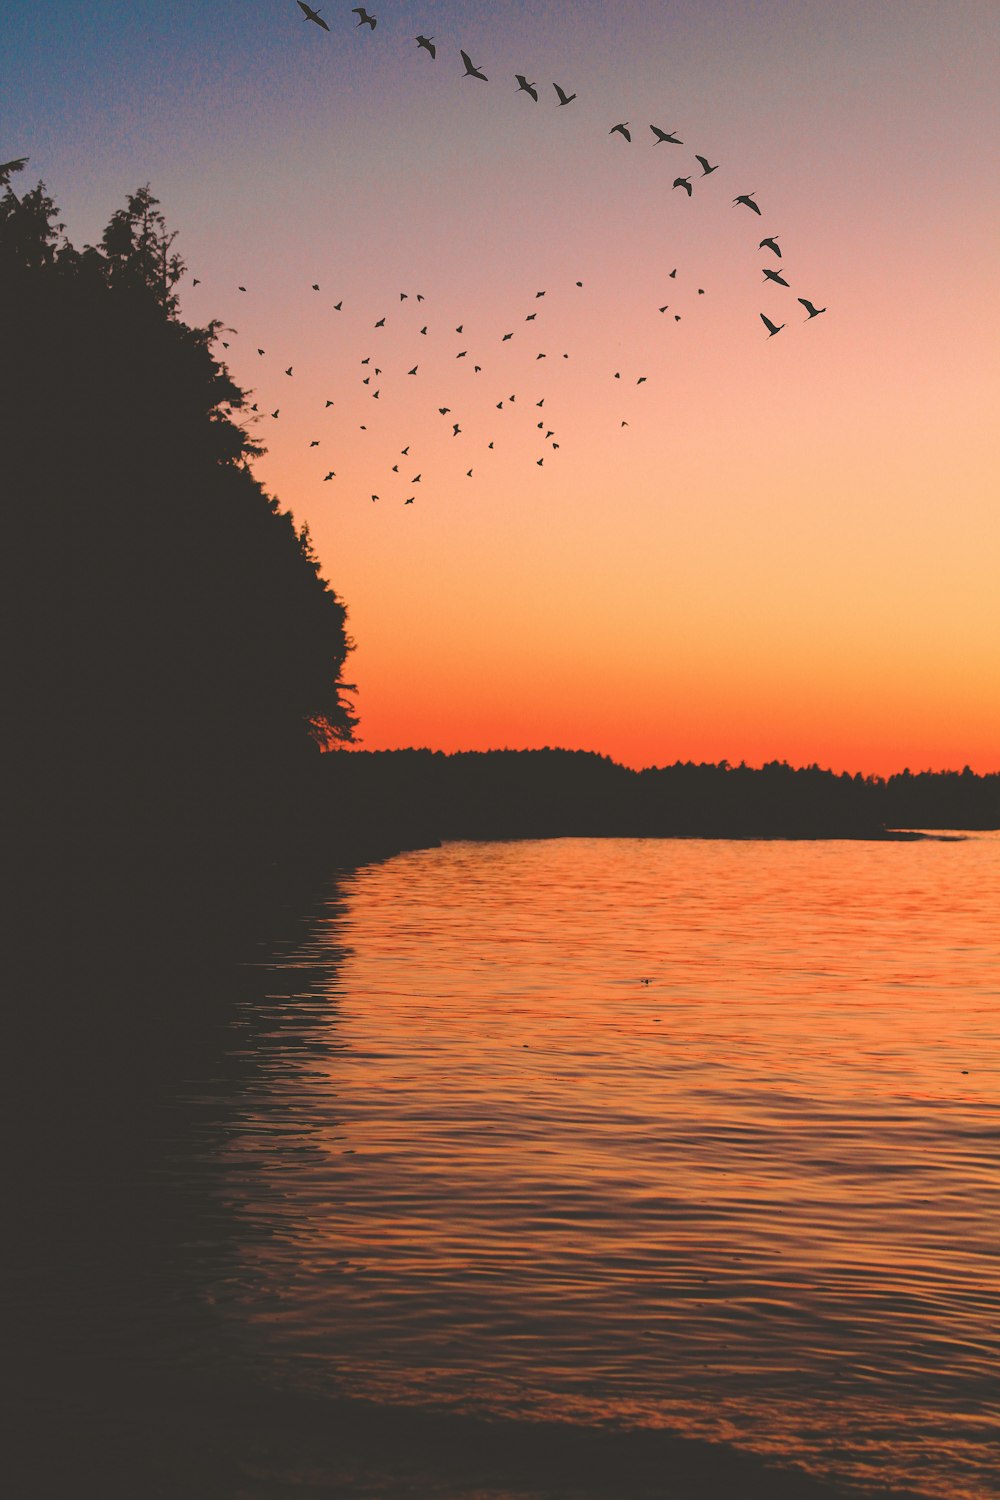 Silueta de pájaros volando sobre el lago durante la puesta del sol